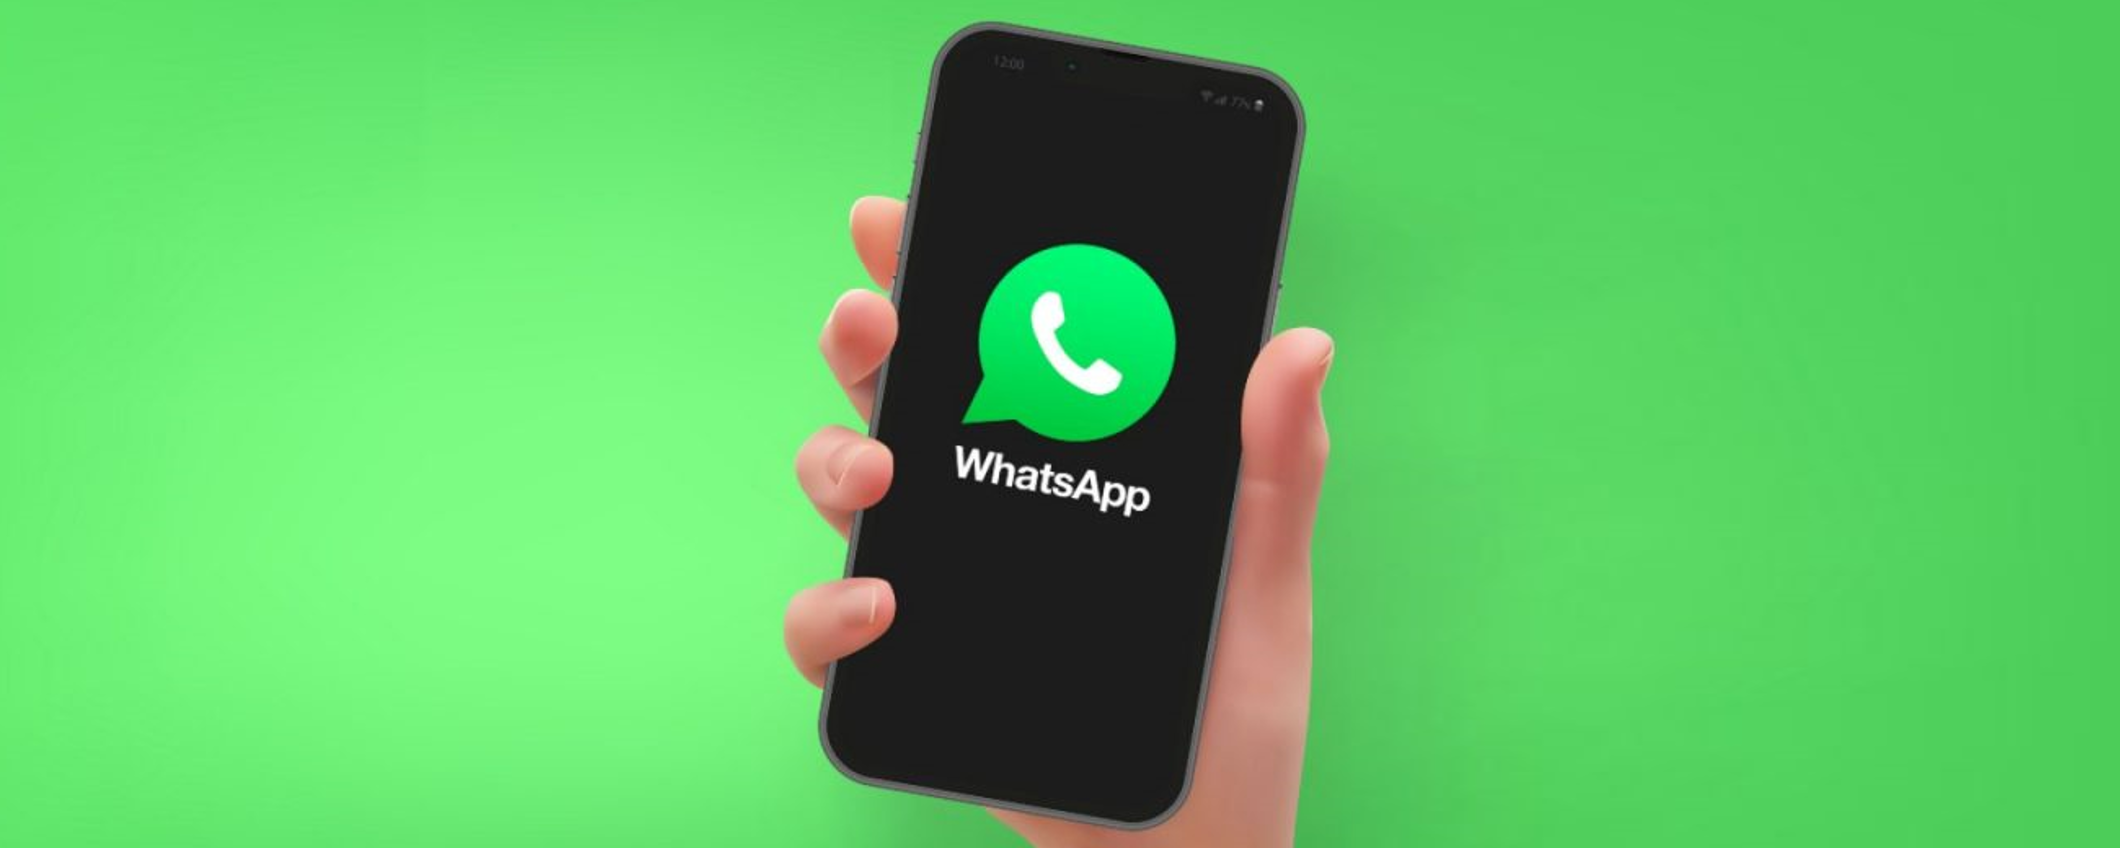 WhatsApp: trasferire le chat su un altro smartphone sarà IMMEDIATO